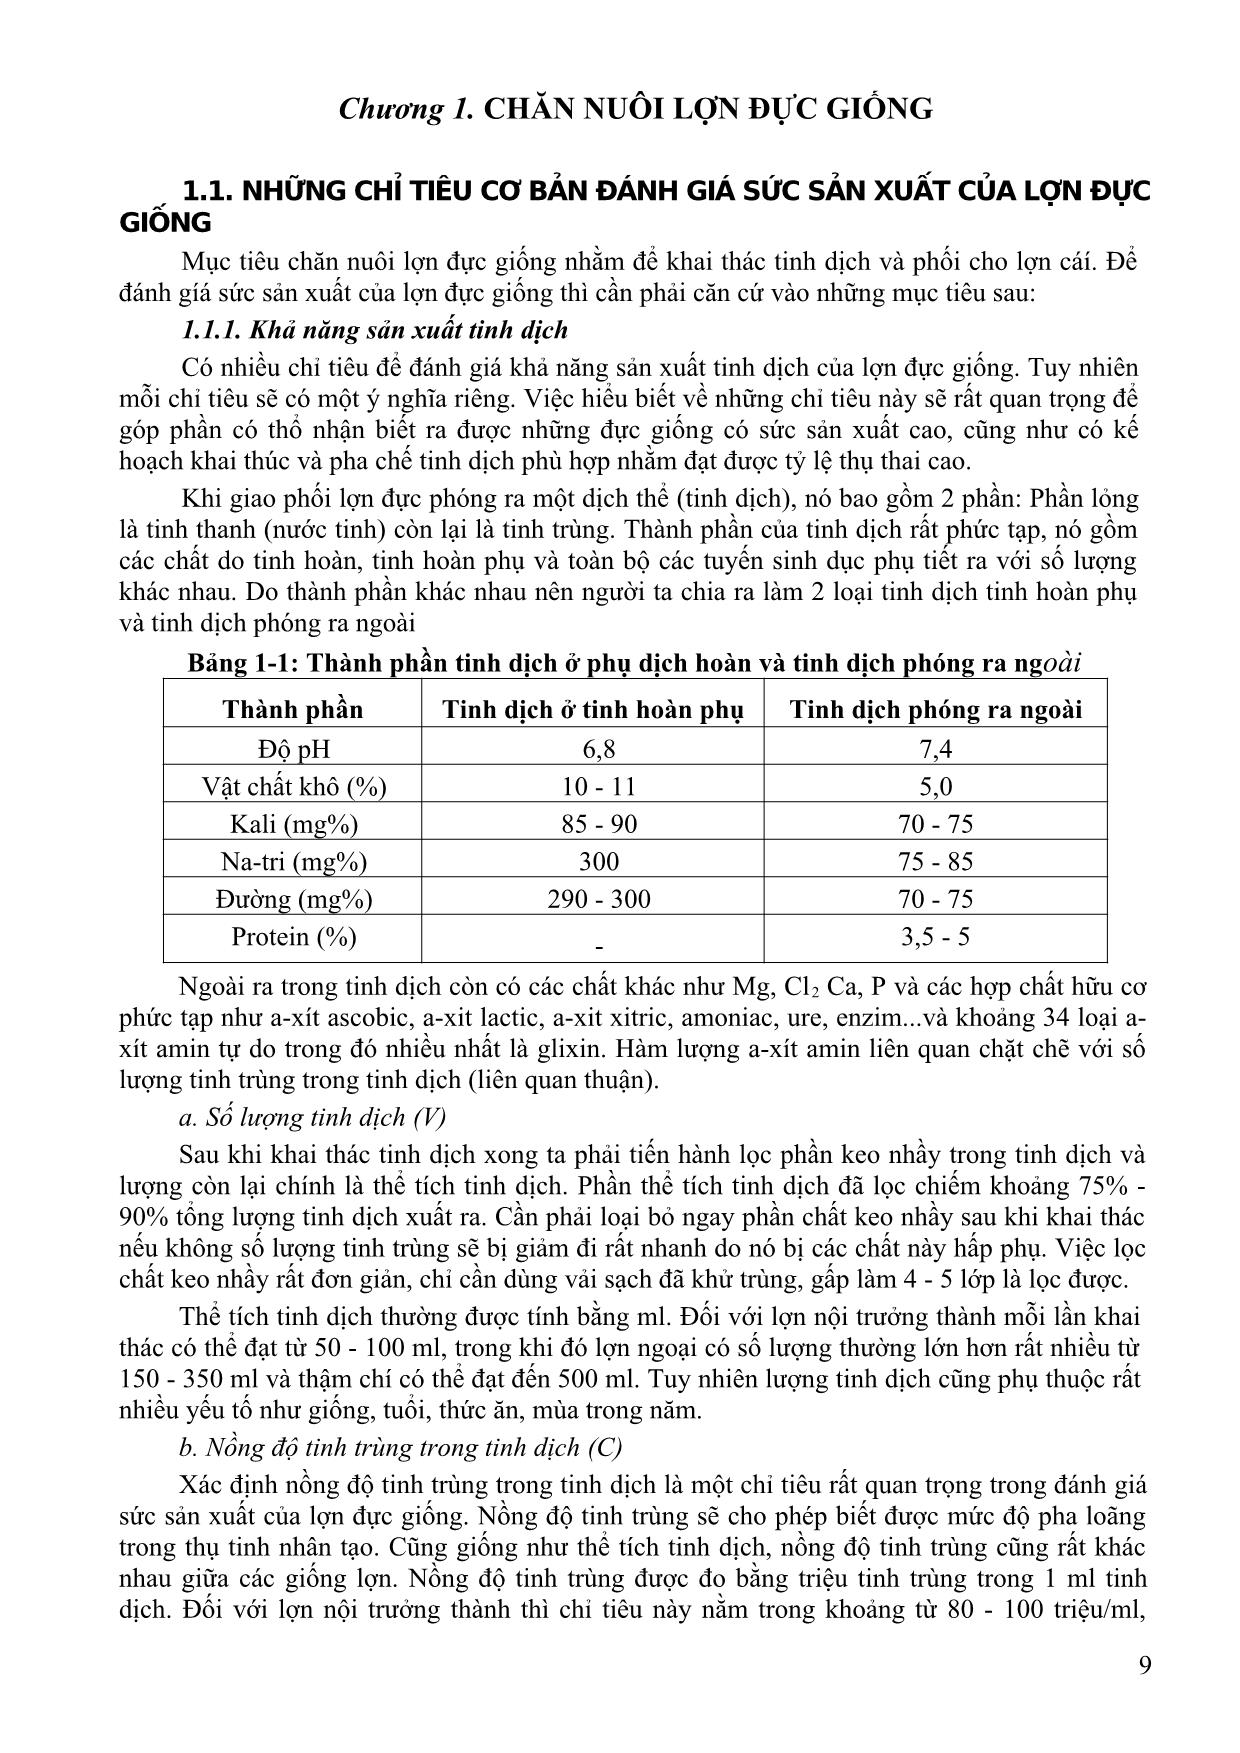 Bài giảng Chăn nuôi chuyên khoa - Dương Thị Thảo Chinh trang 8